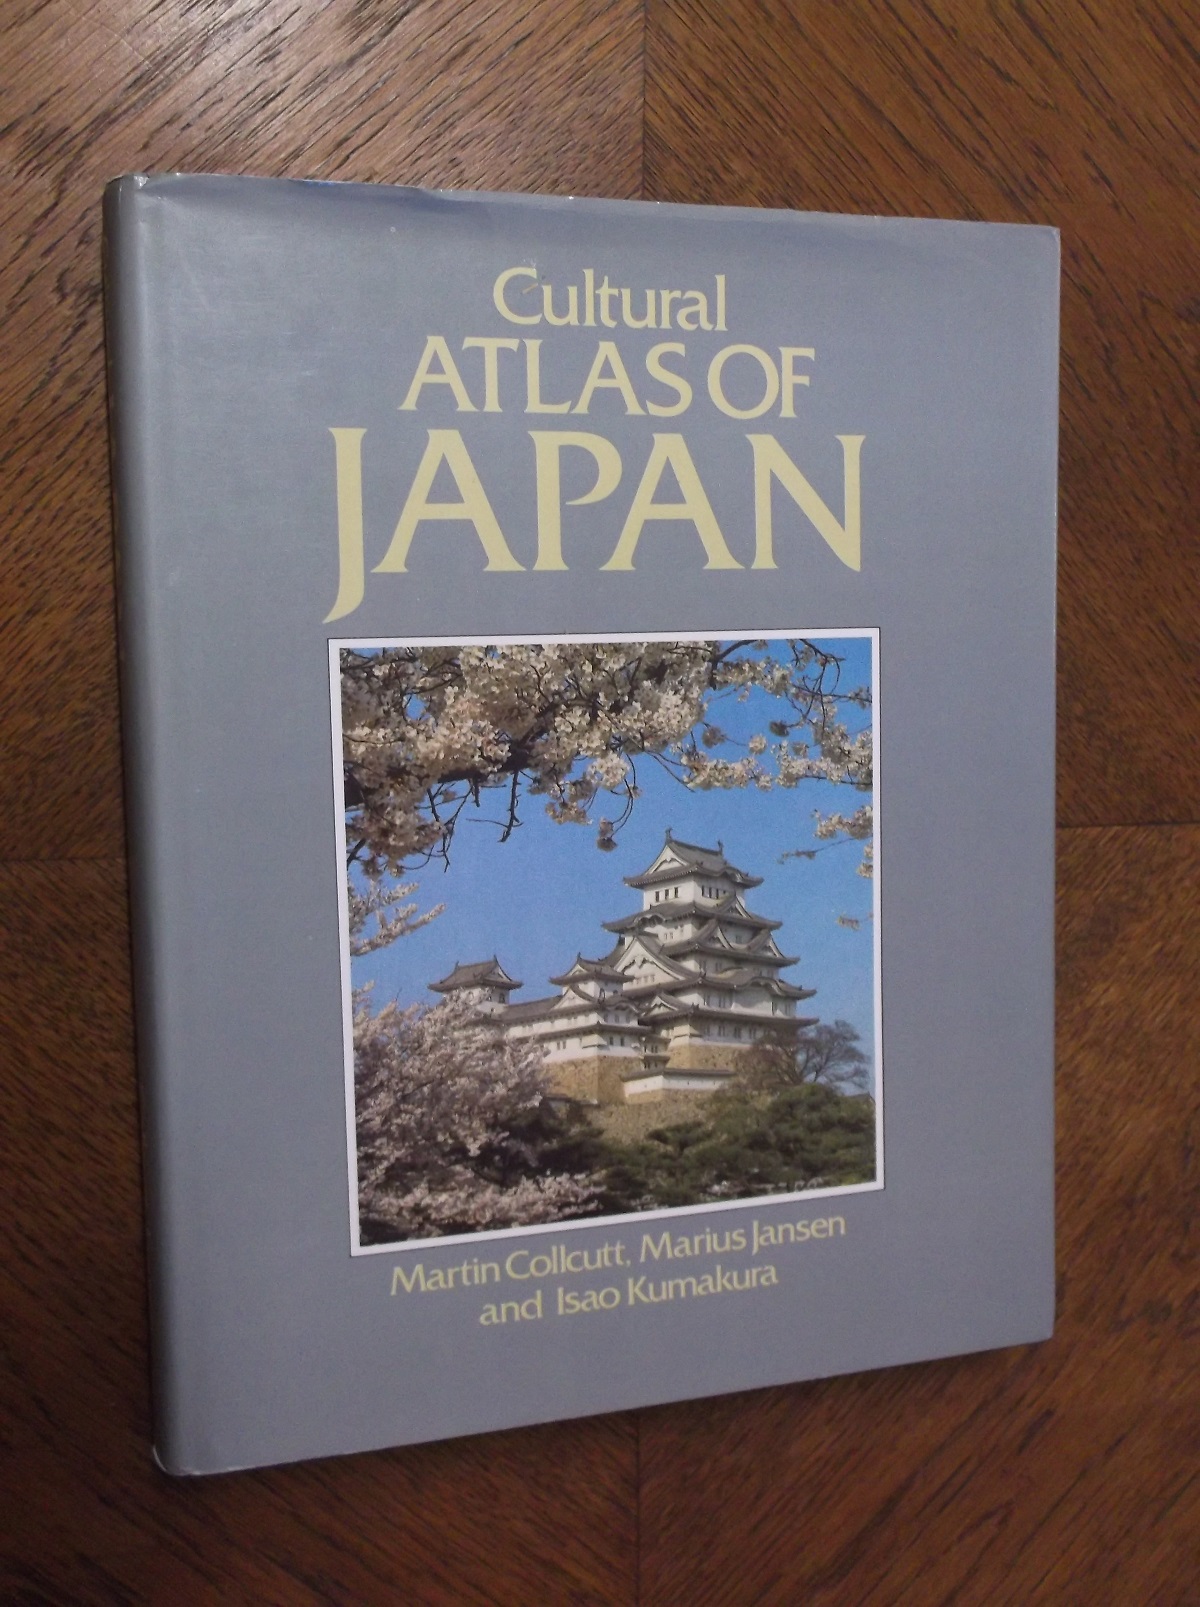 Cultural Atlas of Japan - Collcutt, Martin; Jansen, Markus; Kumakura, Isao